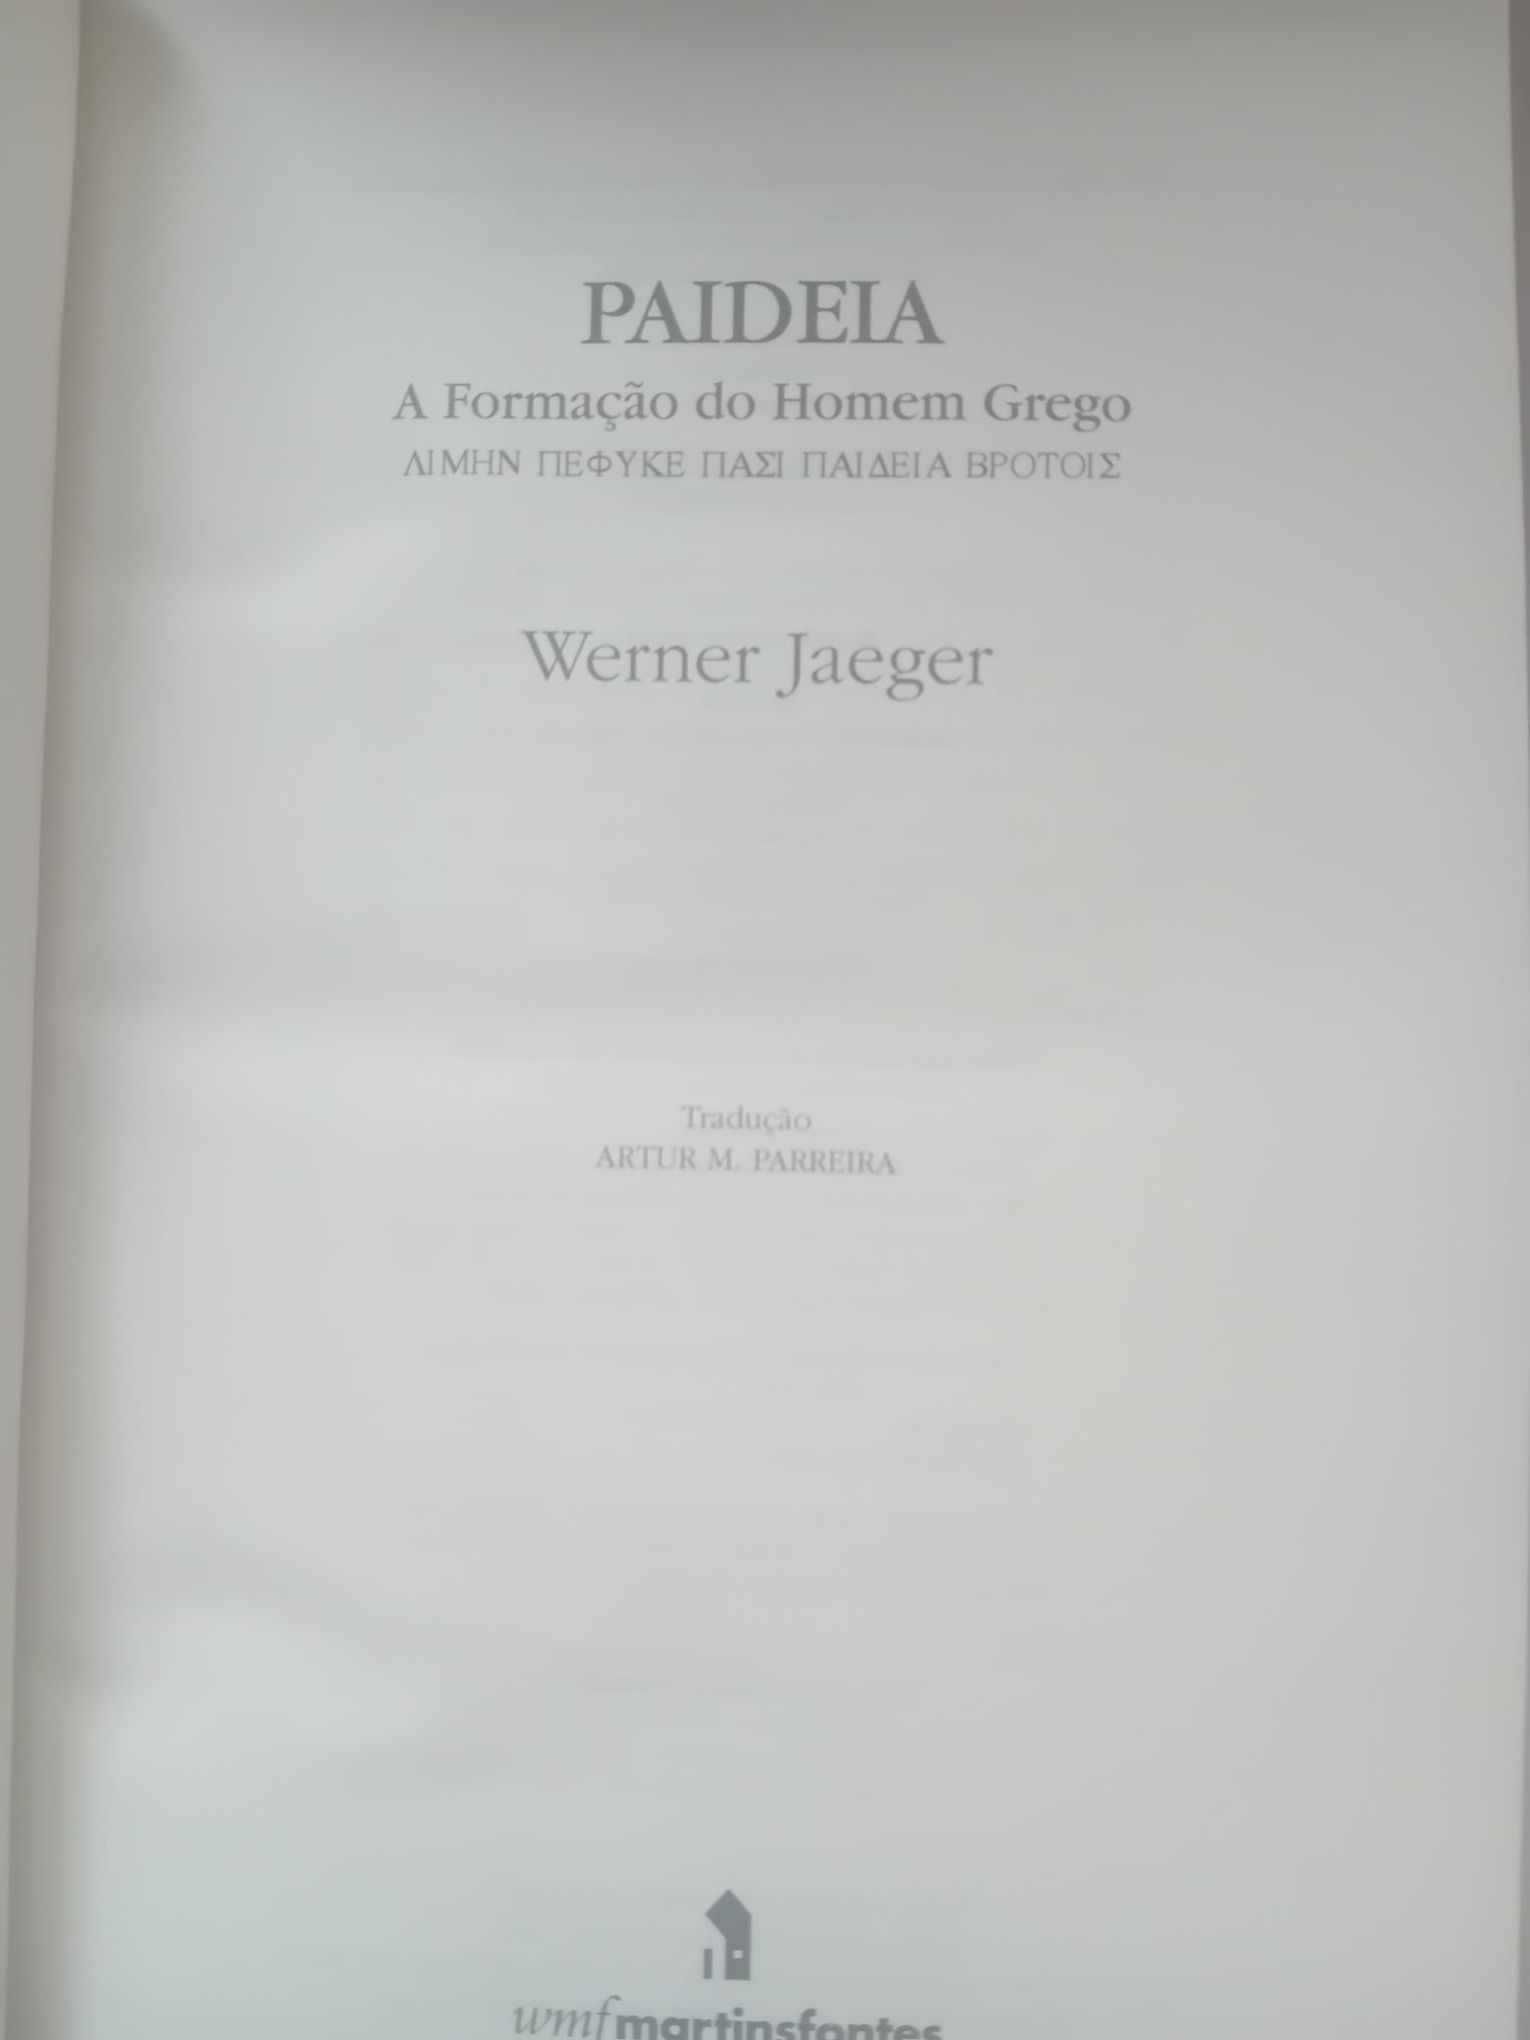 Paideia: A Formação do Homem Moderno - Werner Jaeger